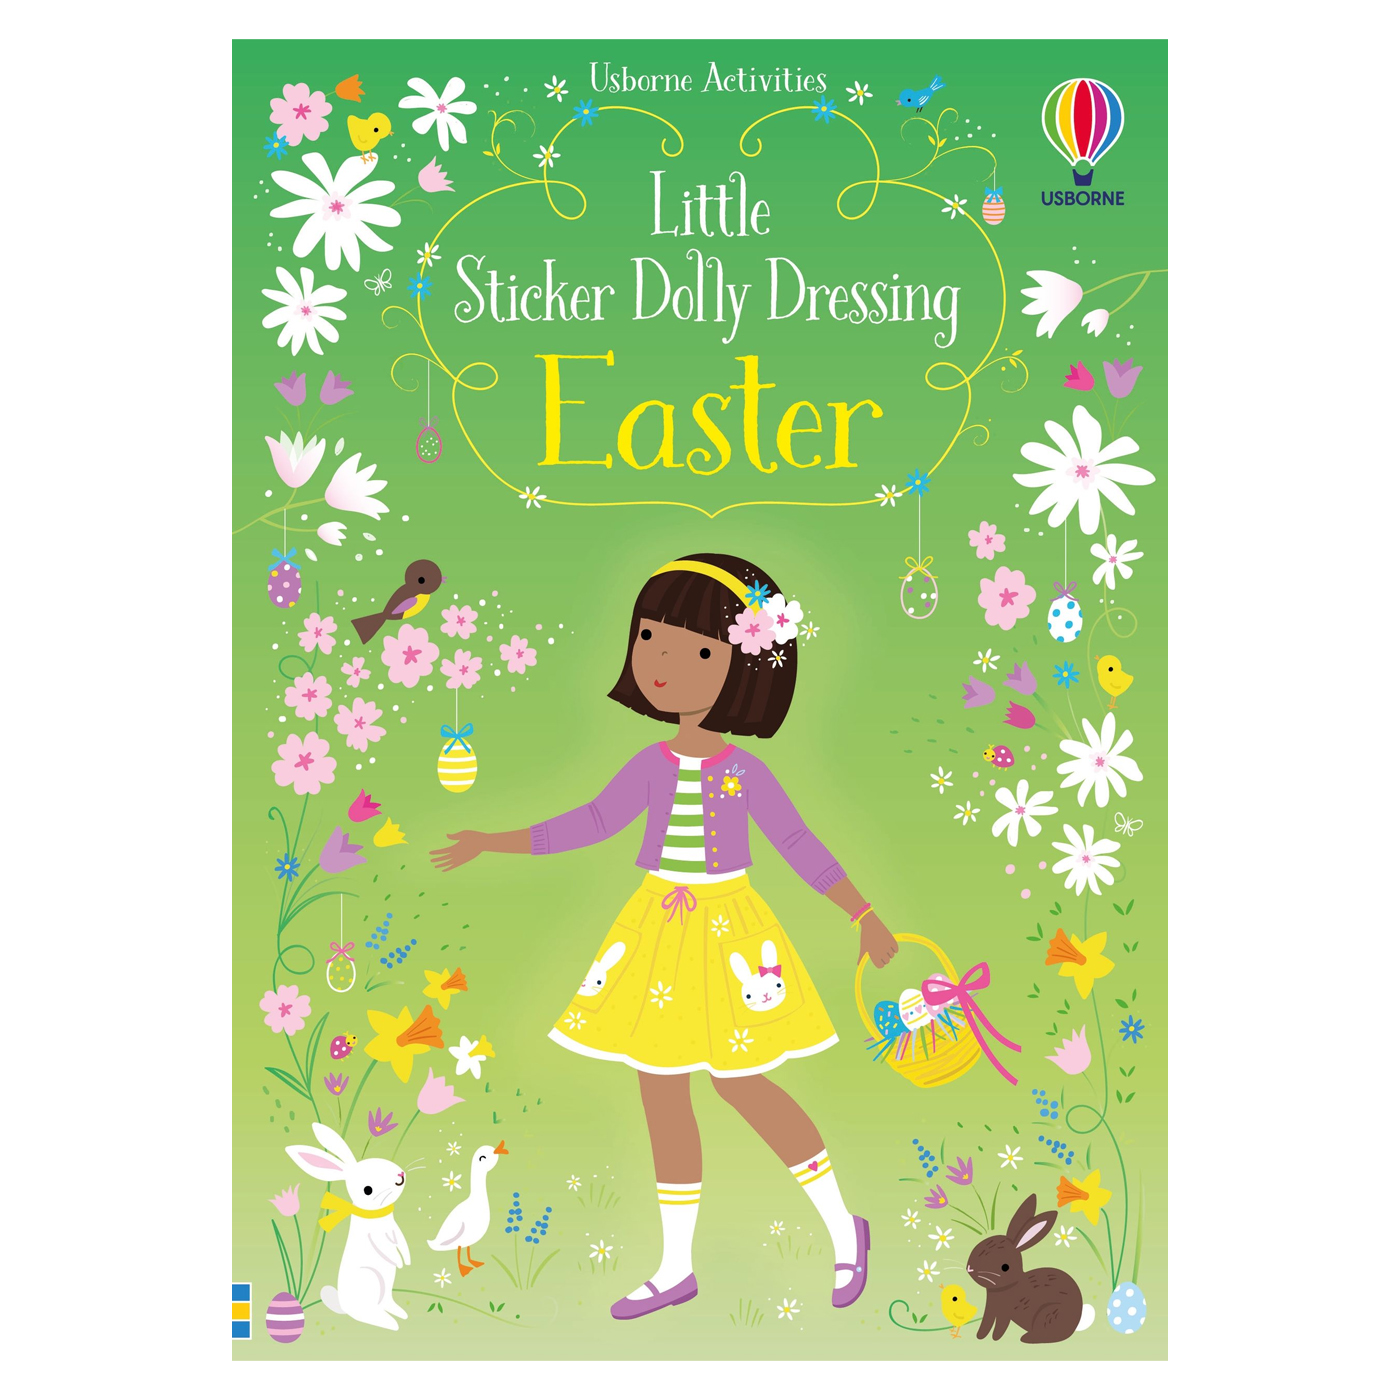  Little Sticker Dolly Dressing Easter